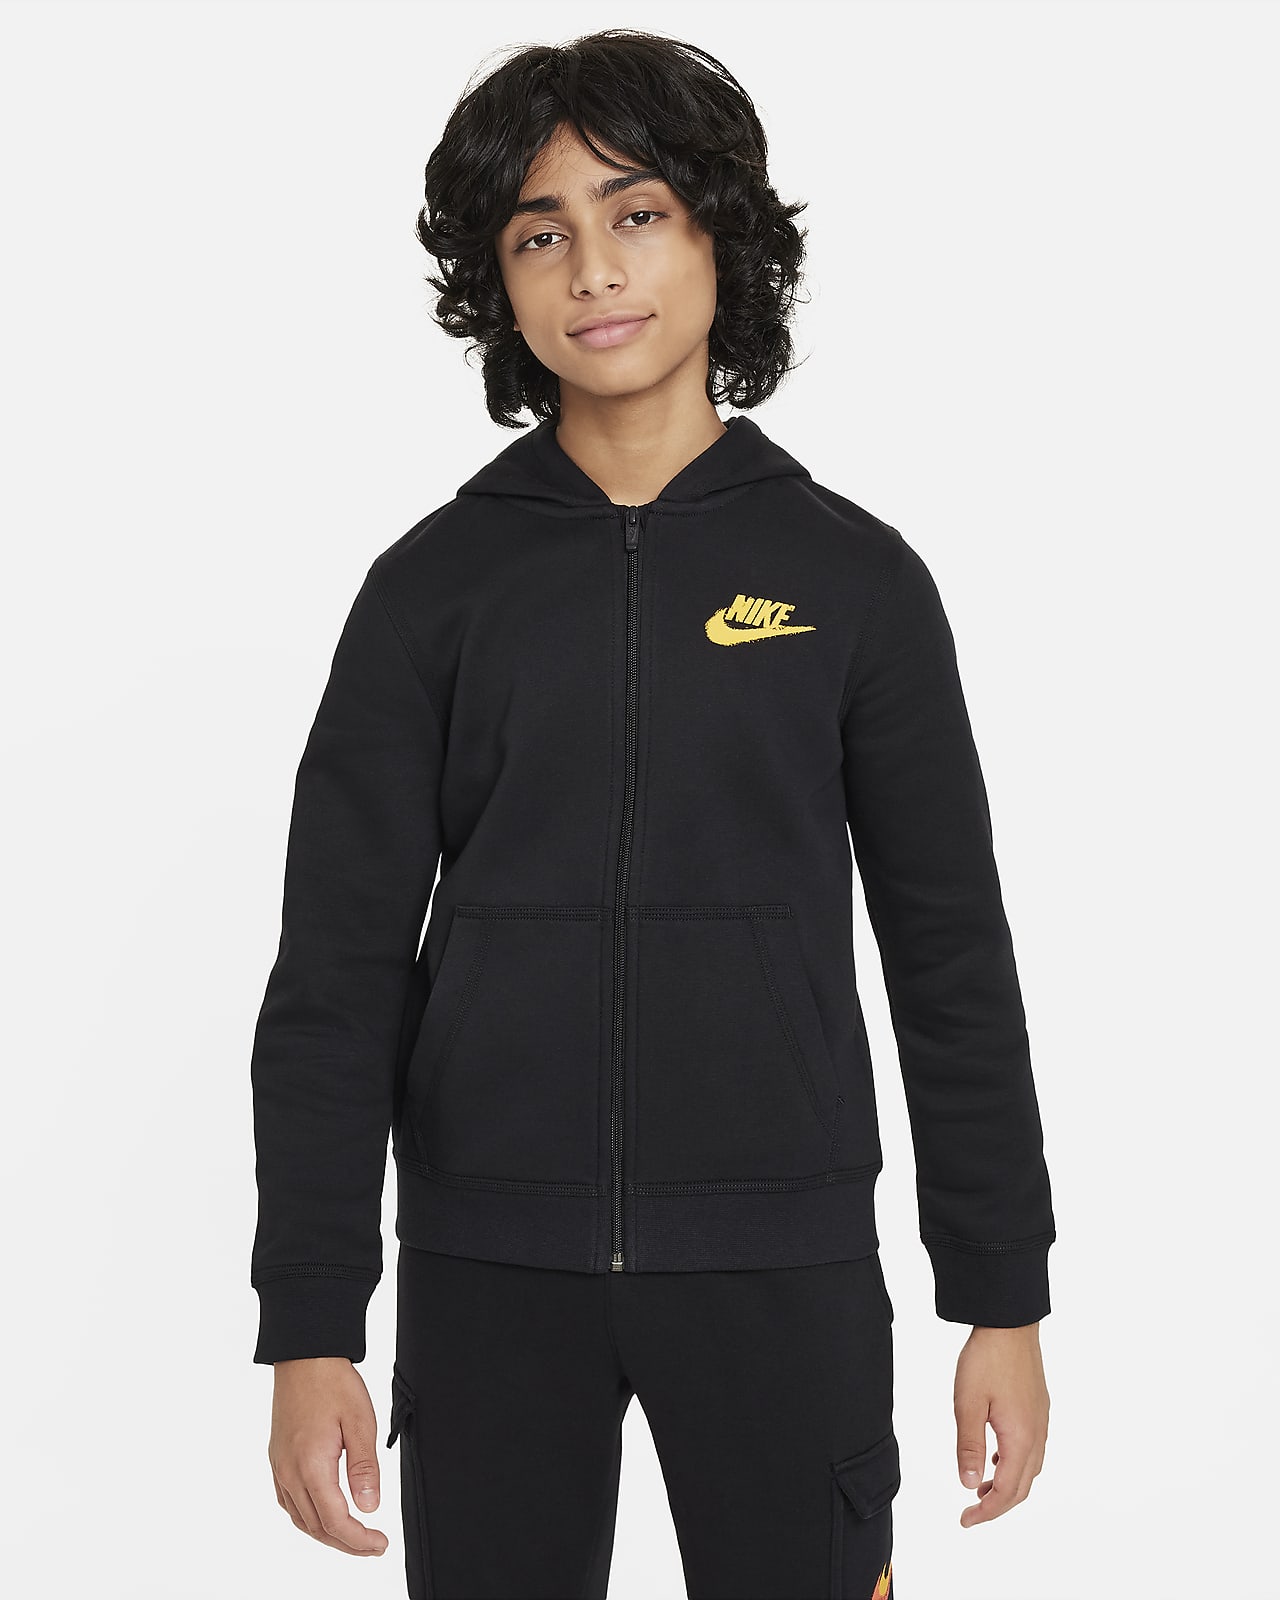 Felpa in fleece con cappuccio, zip a tutta lunghezza e grafica Nike Sportswear – Ragazzo